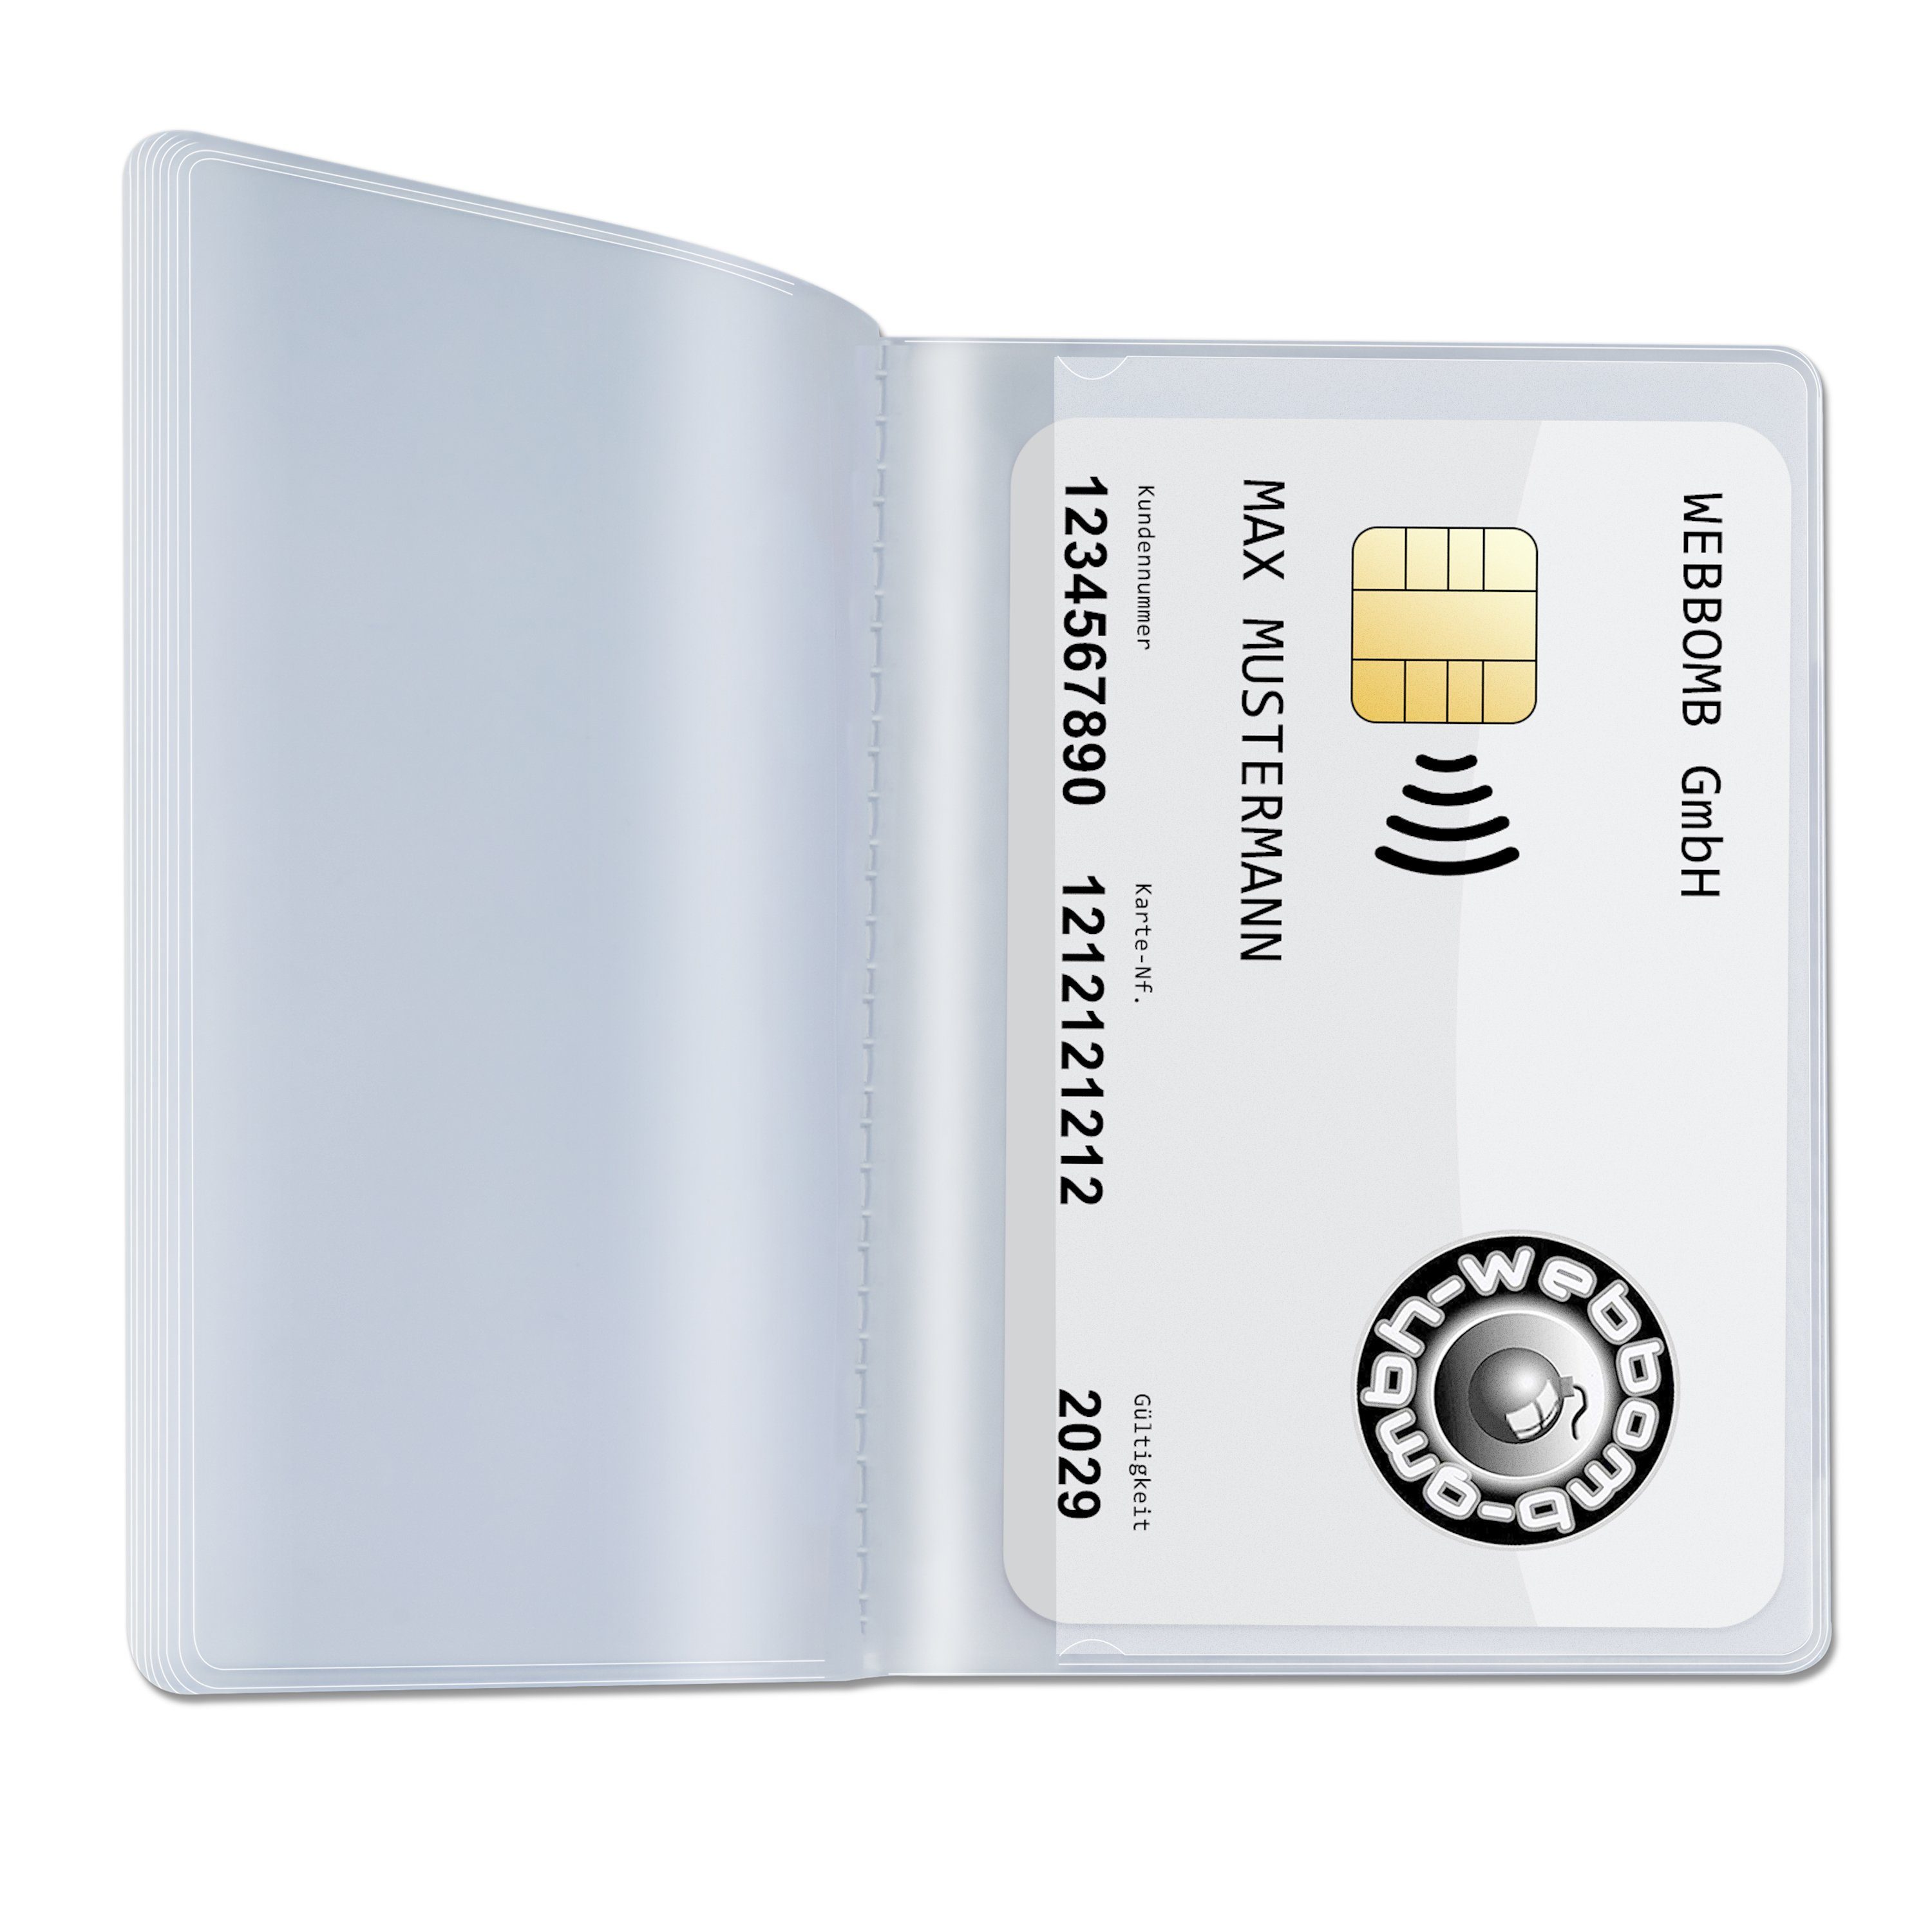 WEBBOMB Etui 10fach Kartenetui Wallet Kartenhalter Brieftaschen Einsatz transparent 2x10fach